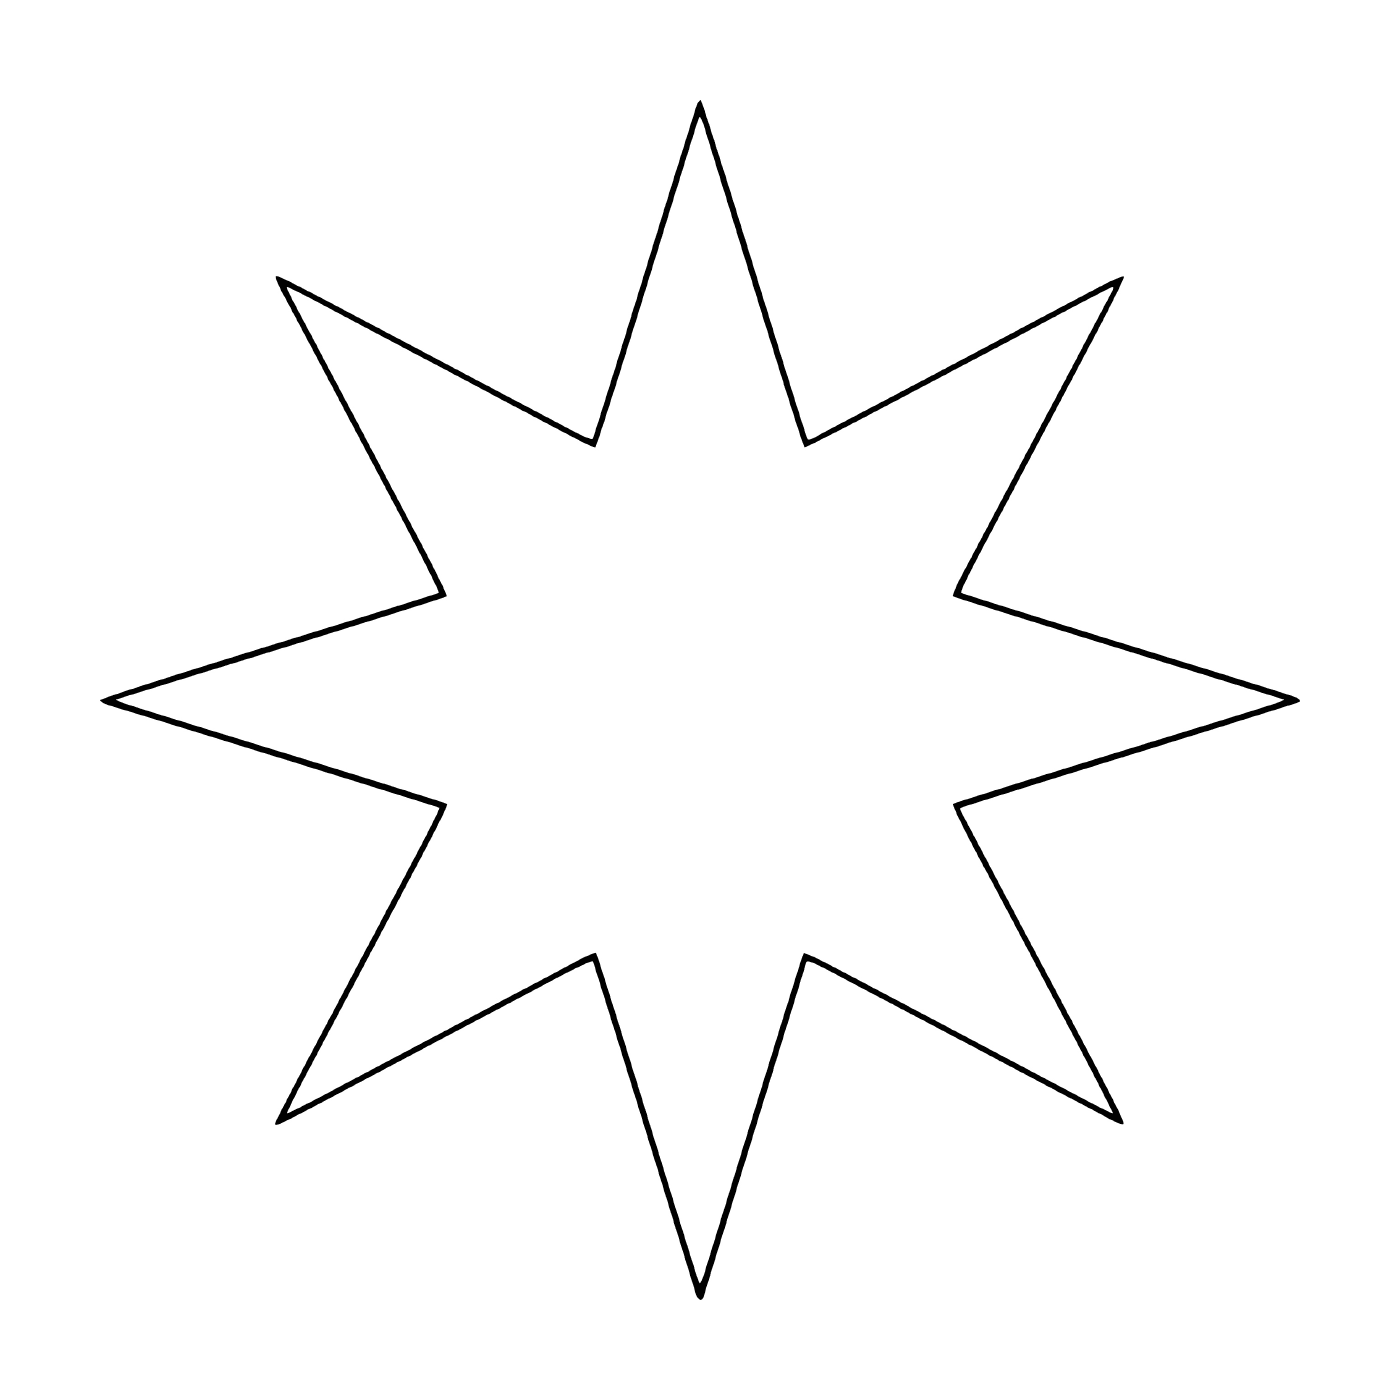  Ein Stern mit acht Ästen 